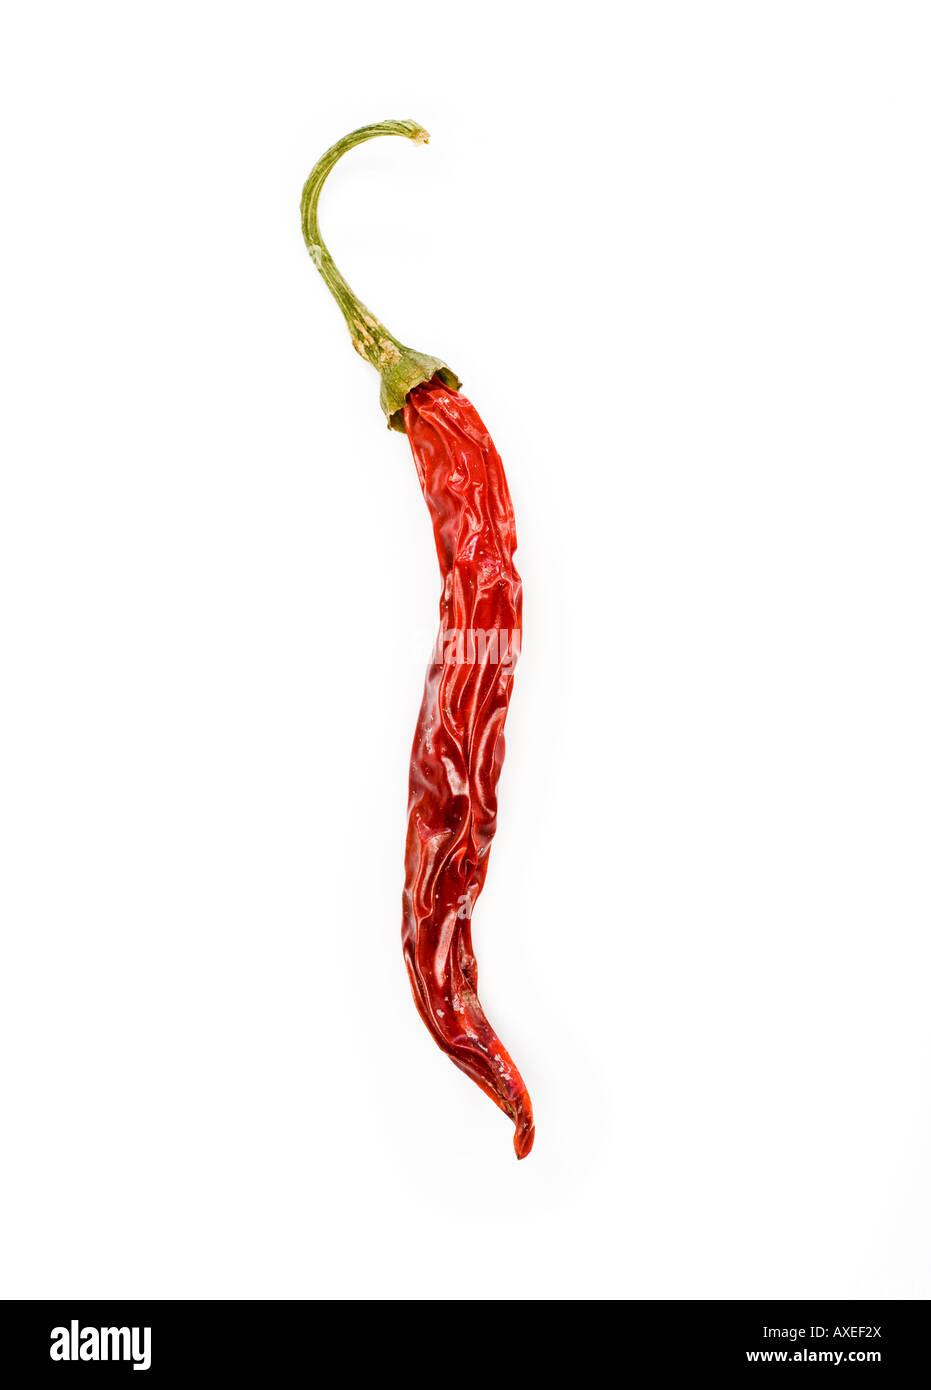 Single red sun dried chilli pepper Stock Photo